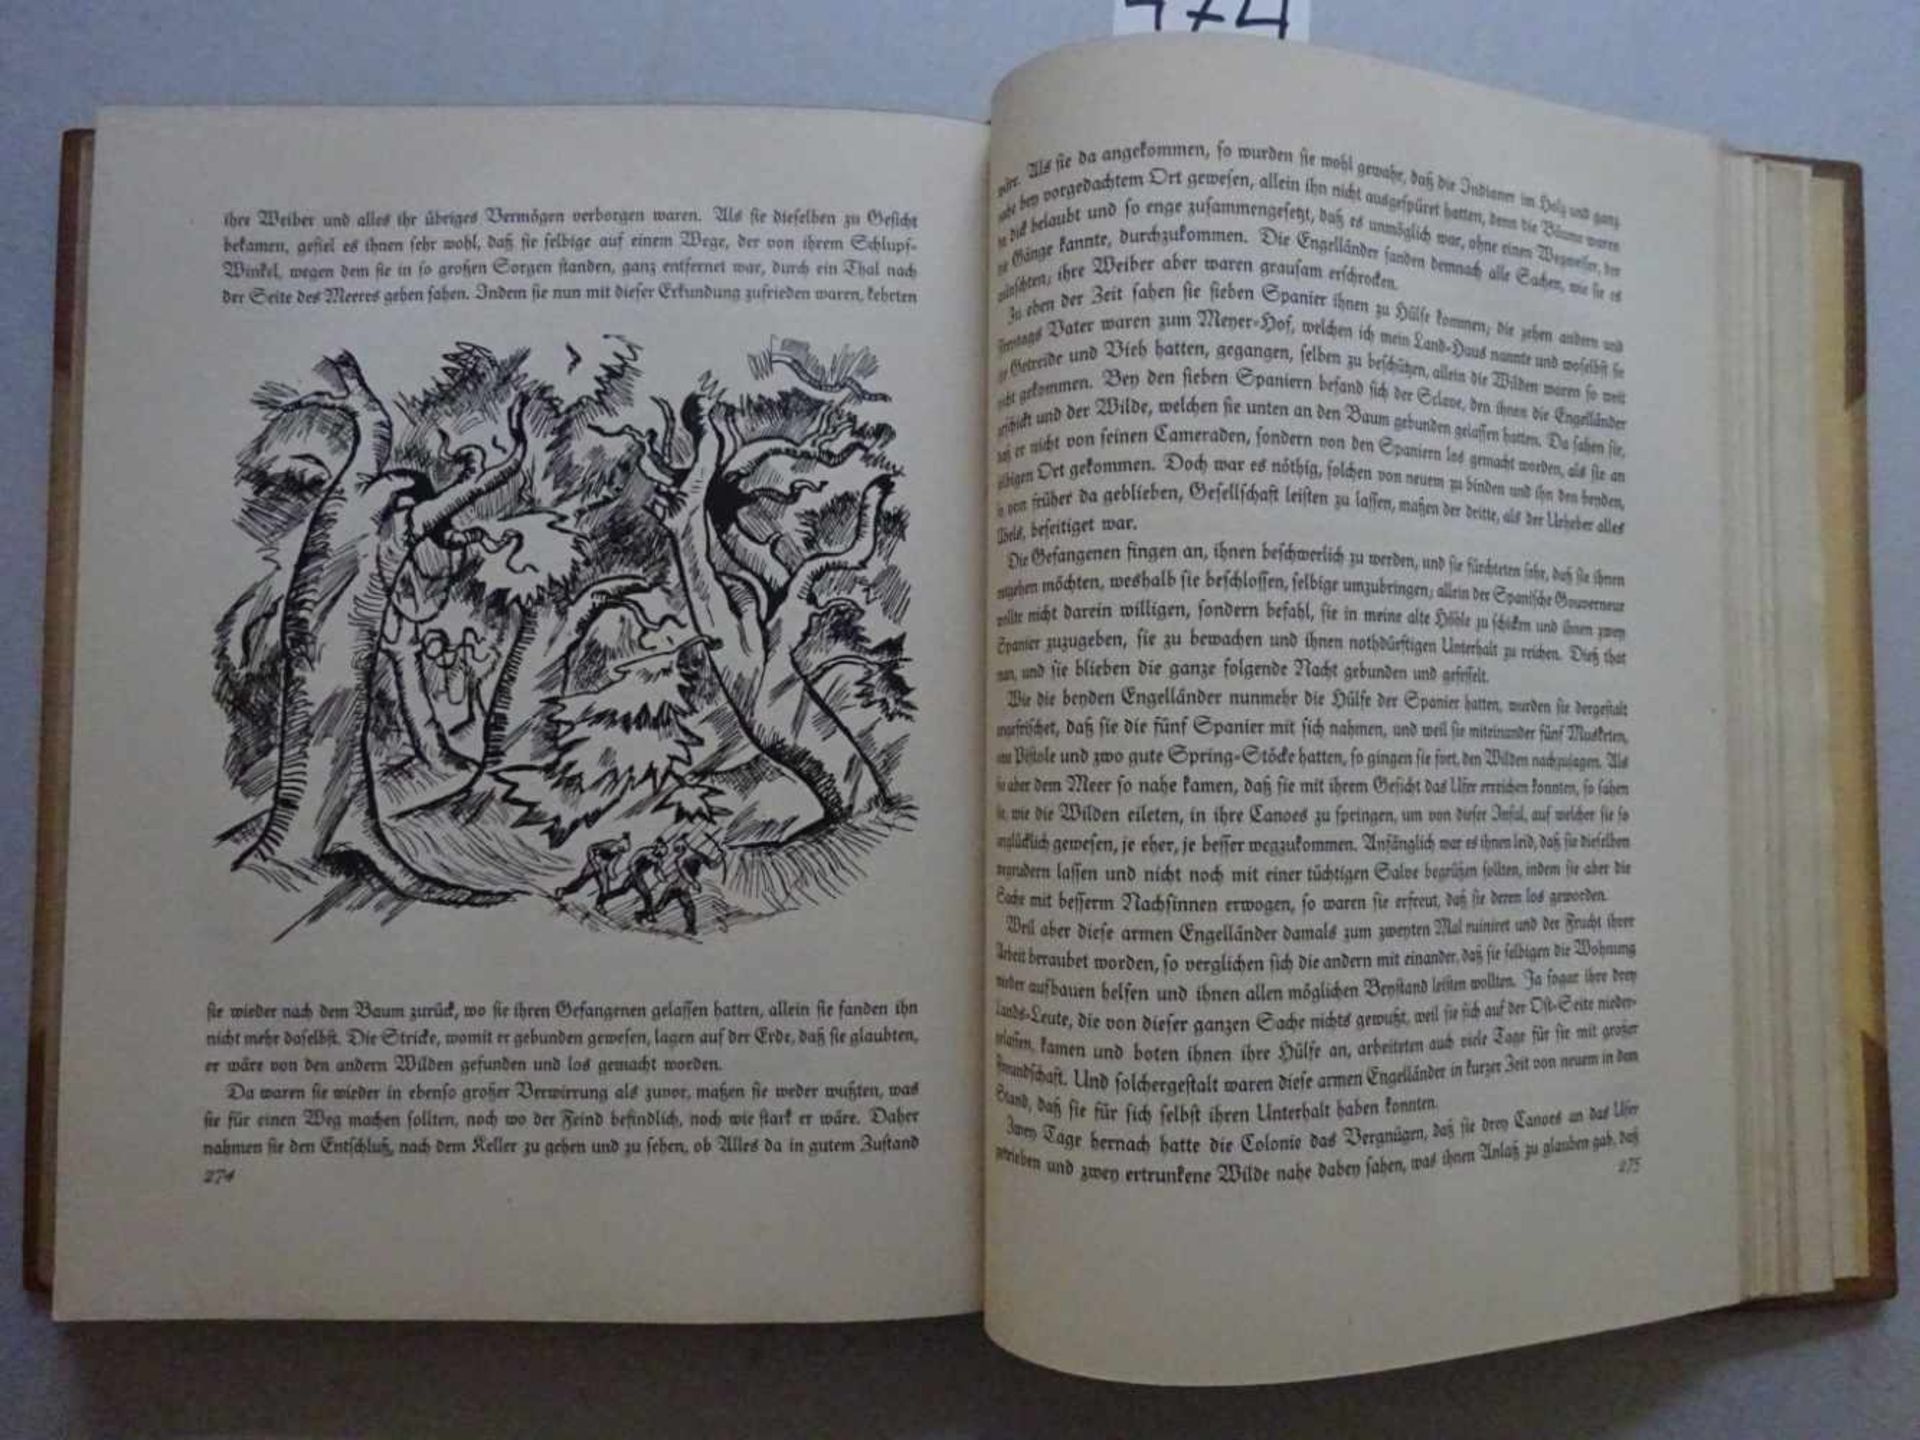 Pressendrucke.- Defoe, D.Robinson Crusoe. München, Goltz, 1919. 4 Bll., 317 S. Mit 85 Illustrationen - Bild 5 aus 6